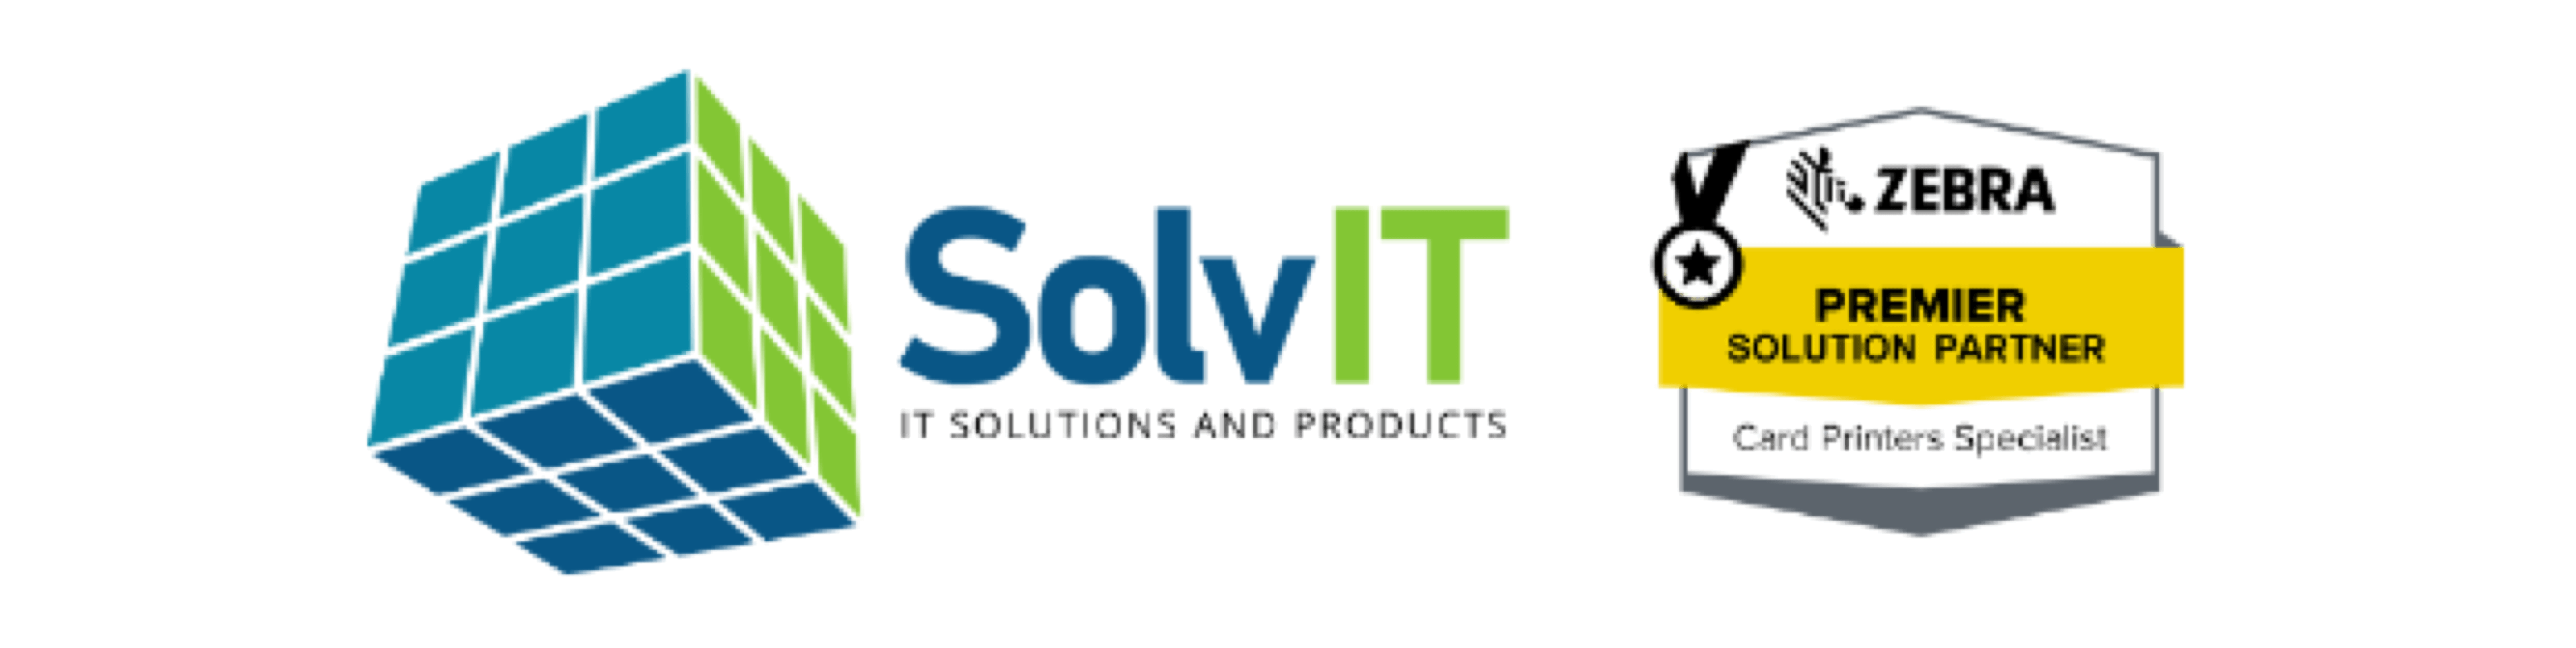 SolvIT-logo